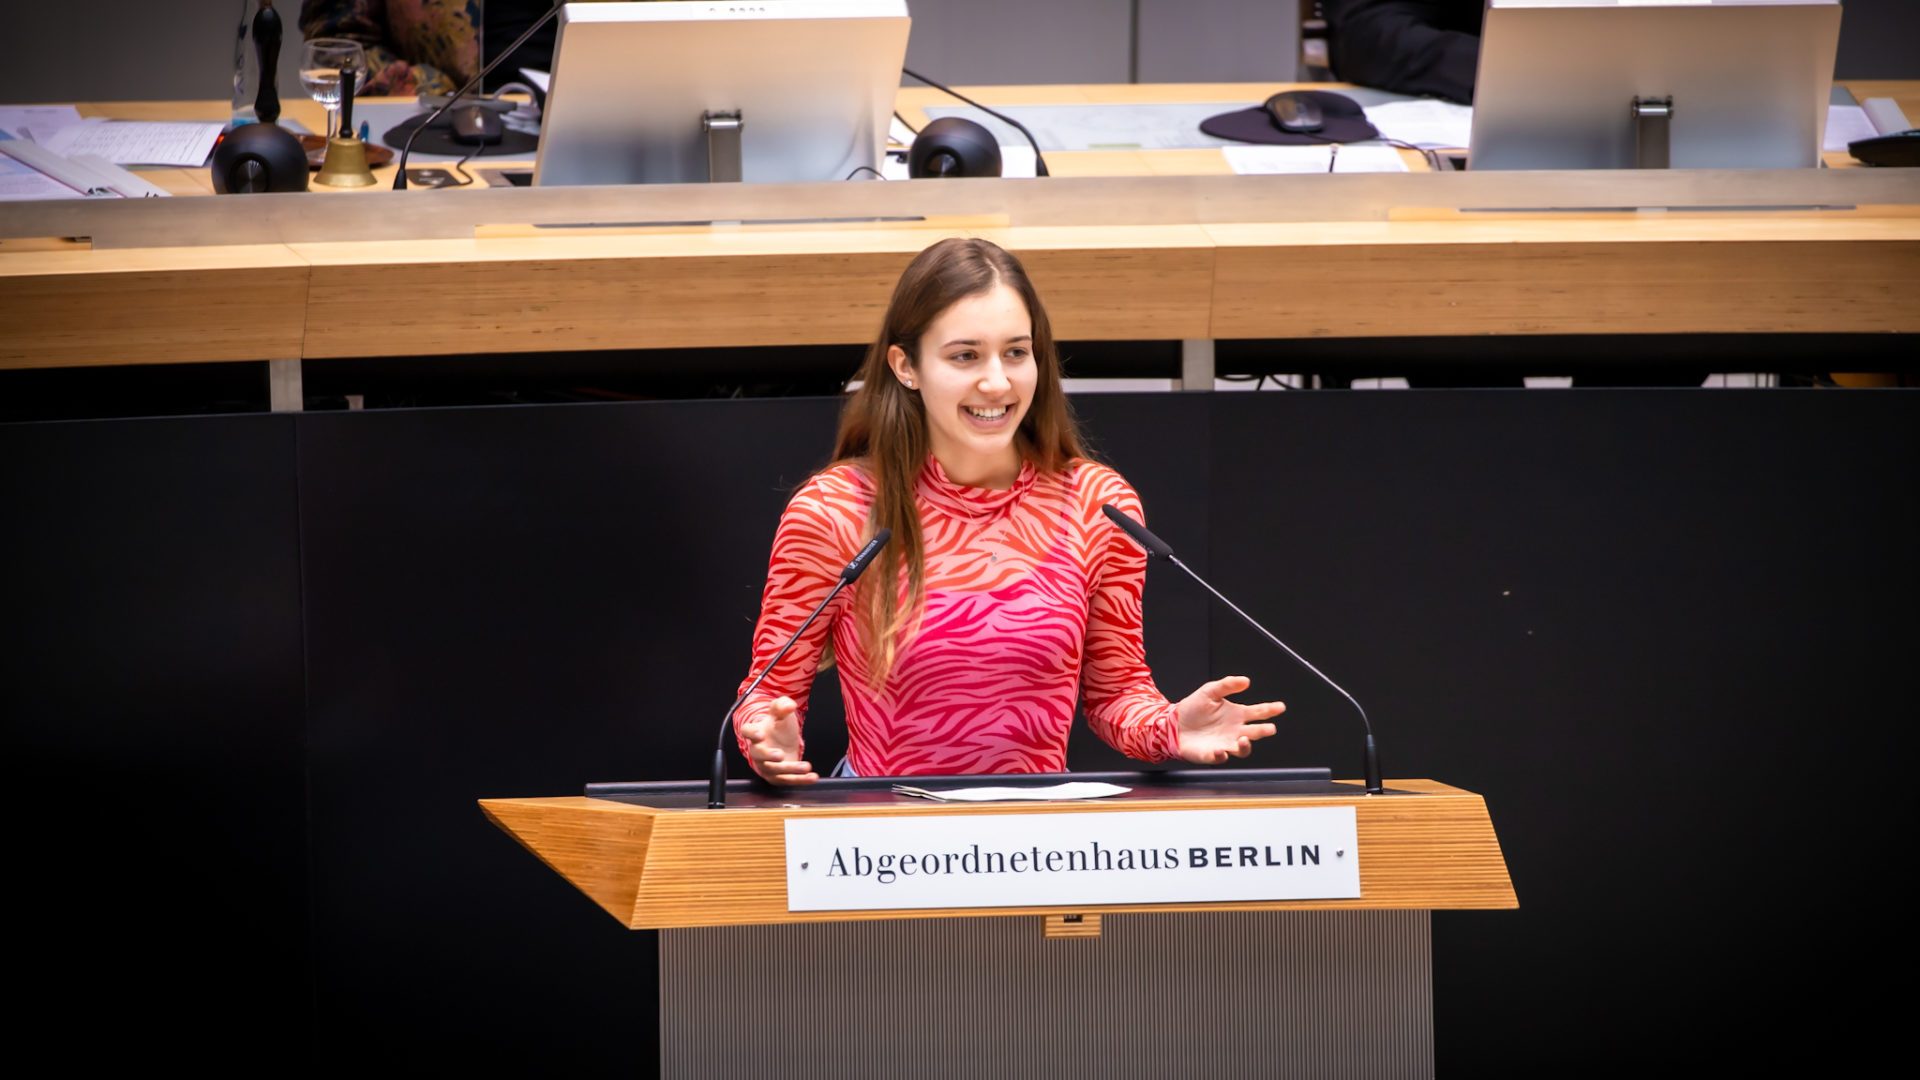 Klara Schedlich steht am Redepult des Abgeordnetenhauses. Sie lächelt und breitet beide Hände aus. Sie ist sehr jung und trägt ein pinkes Oberteil.